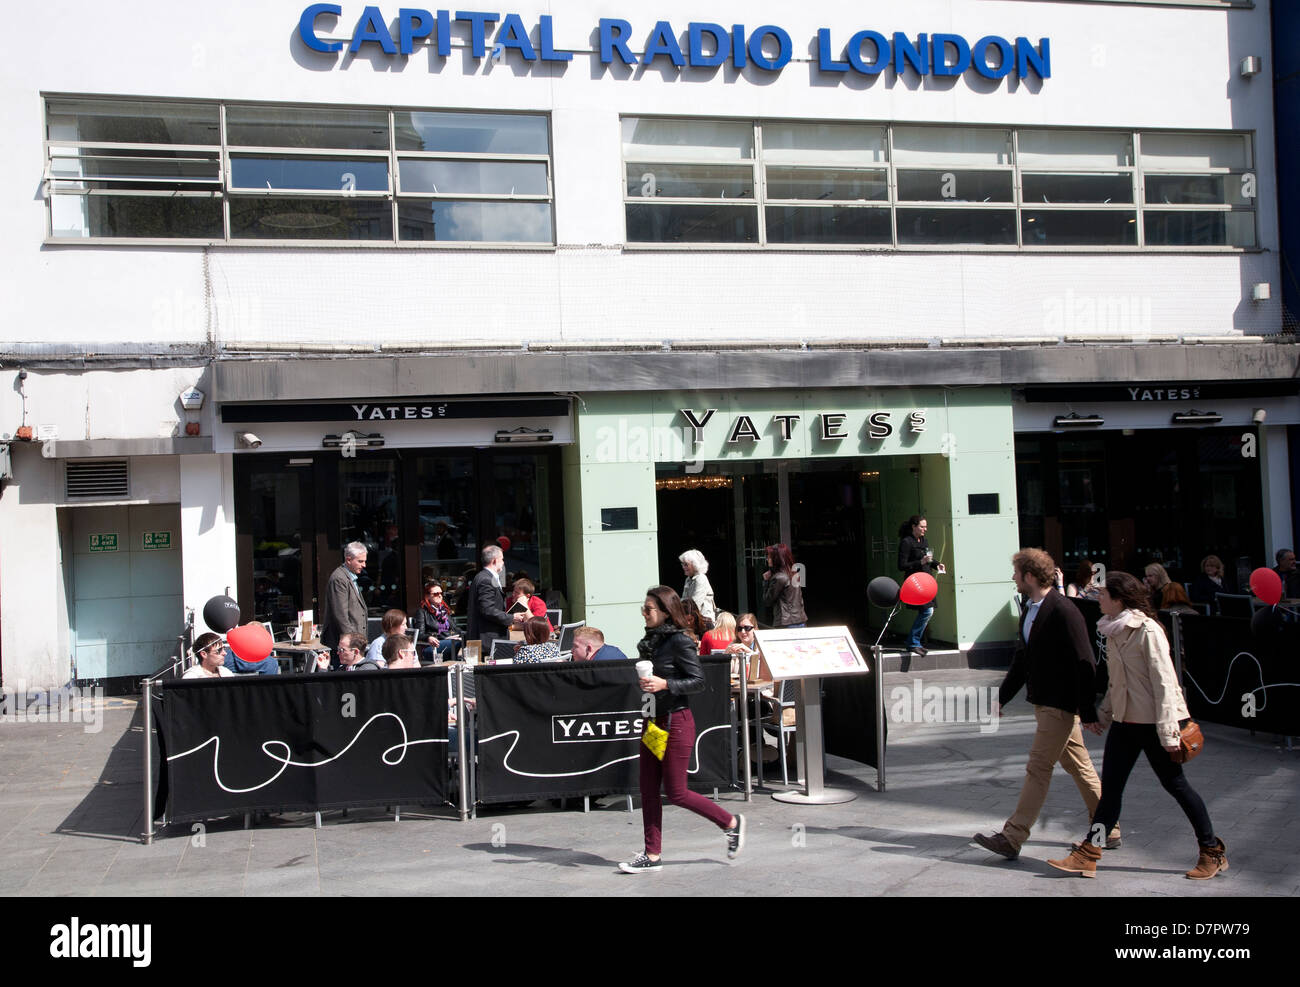 L'extérieur du Capital Radio bâtiment sur Leicester Square, West End, Londres, Angleterre, Royaume-Uni Banque D'Images